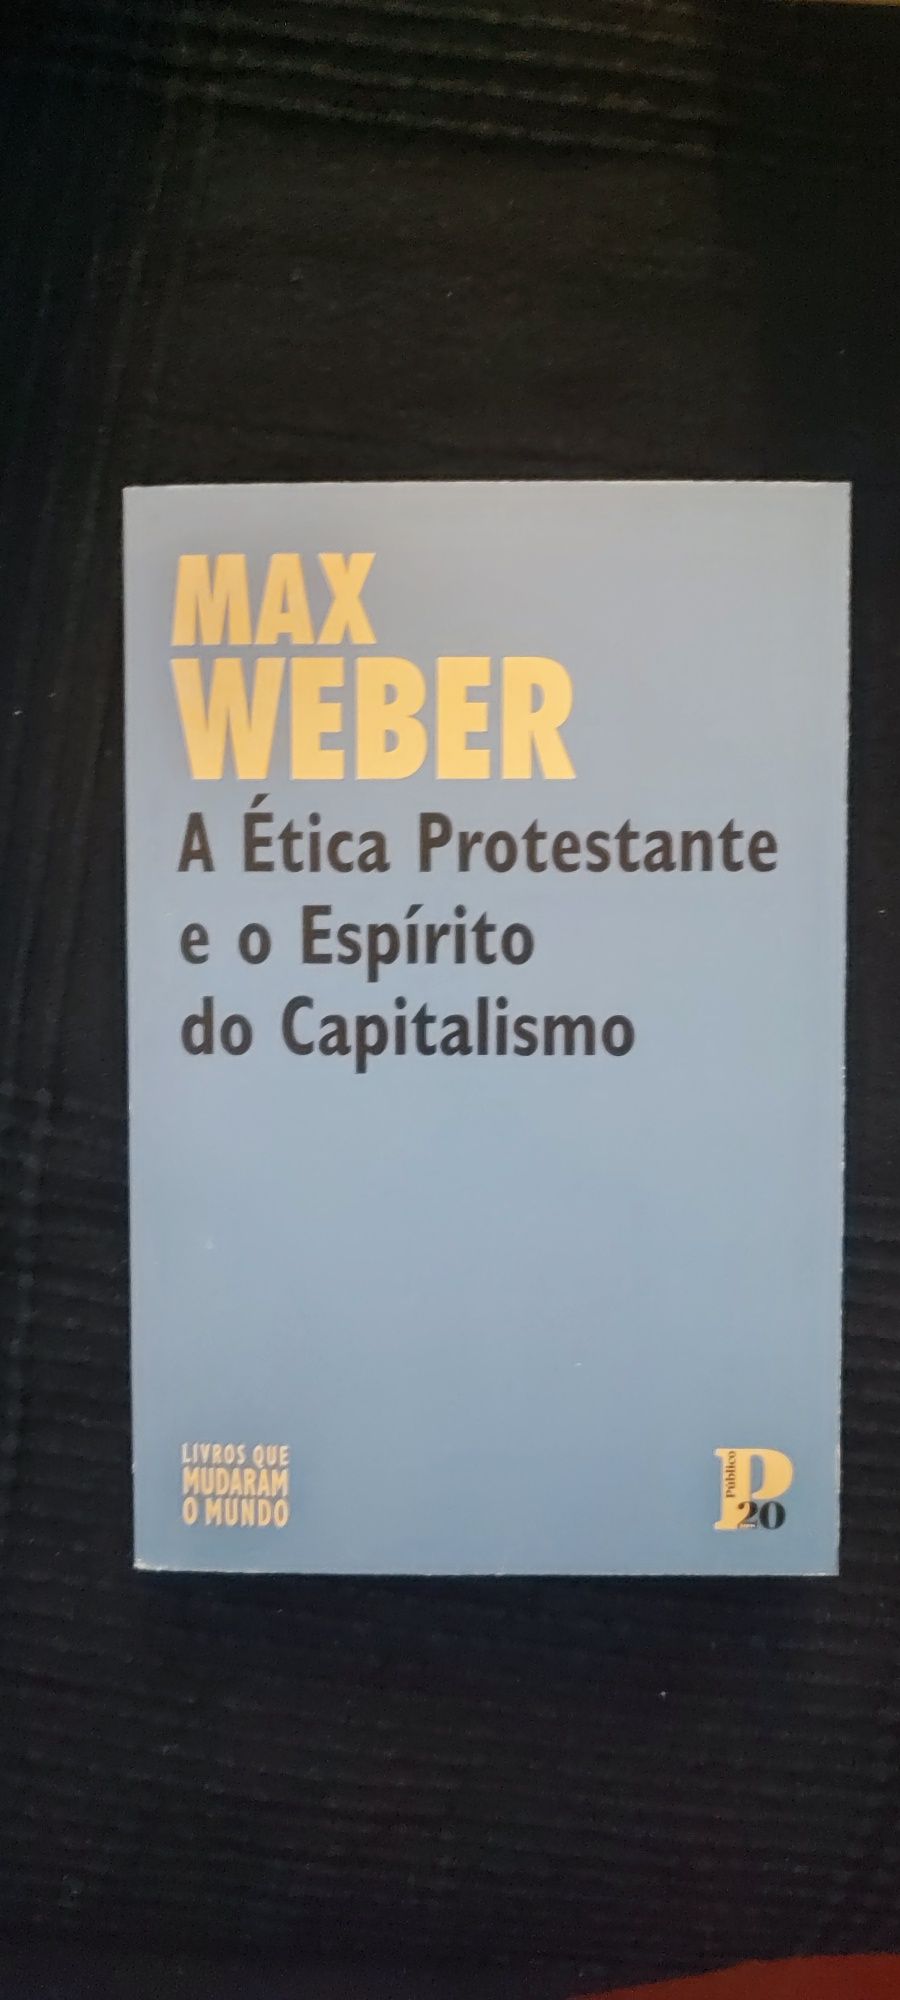 A ética protestante - max weber